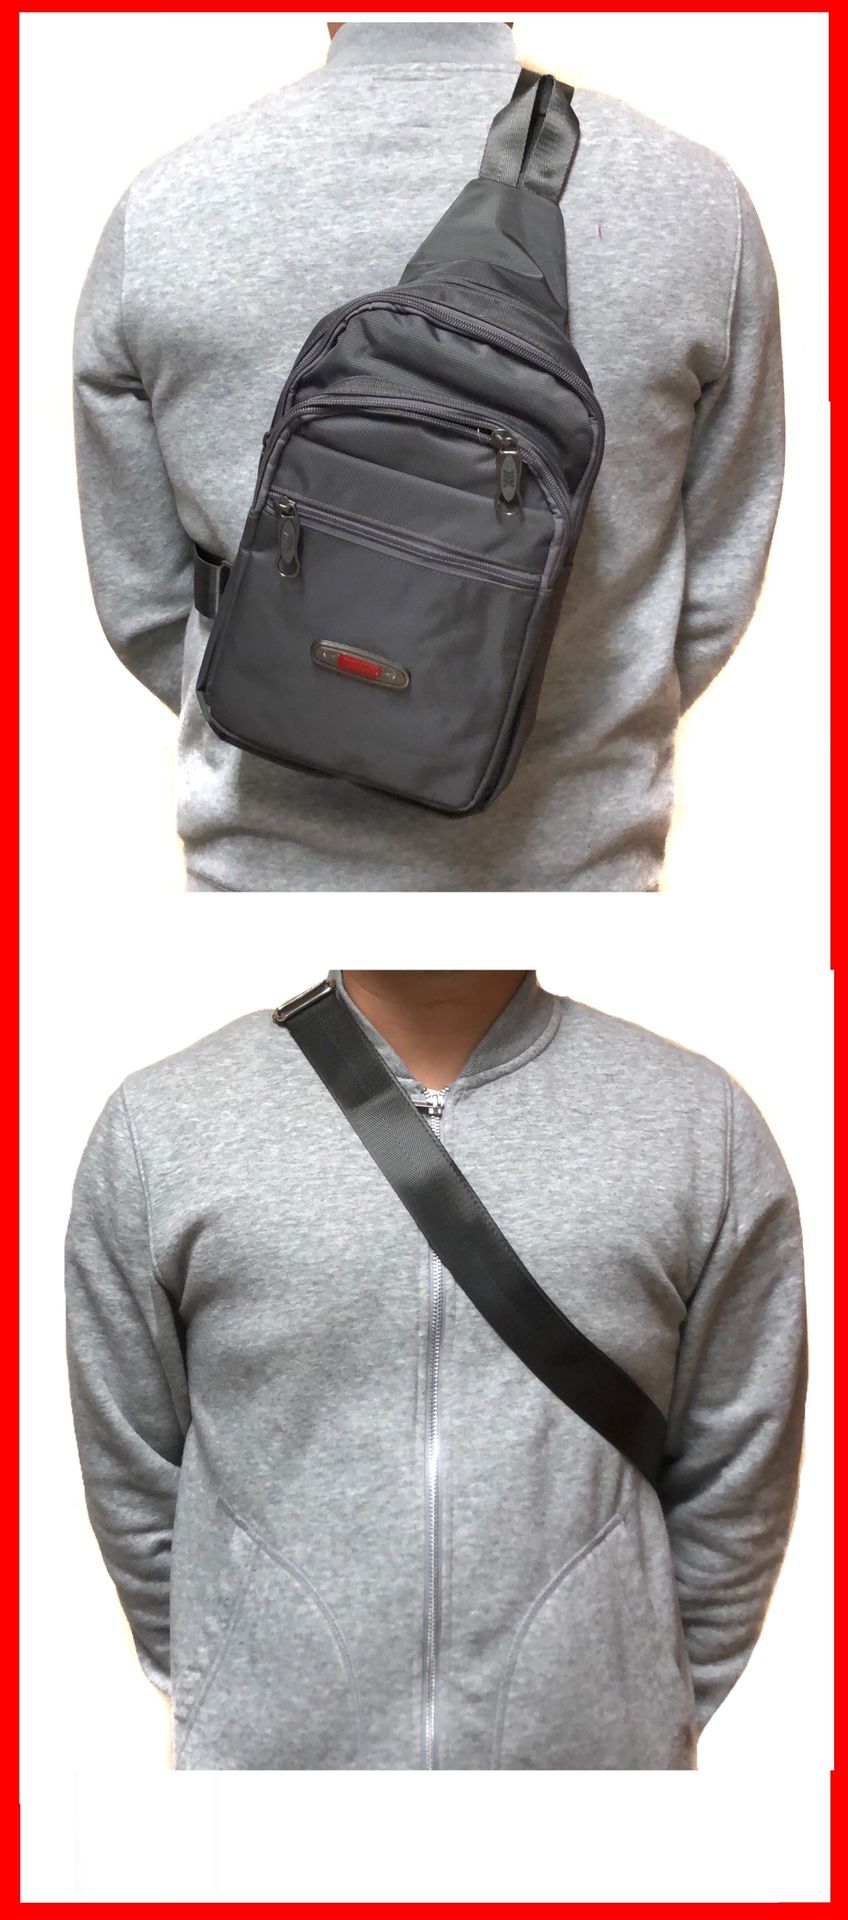 NEW! Side Bag Crossbody bag backpack chest bag sling satchel gym bag pouch biking hiking day pack edc backpack travel bag